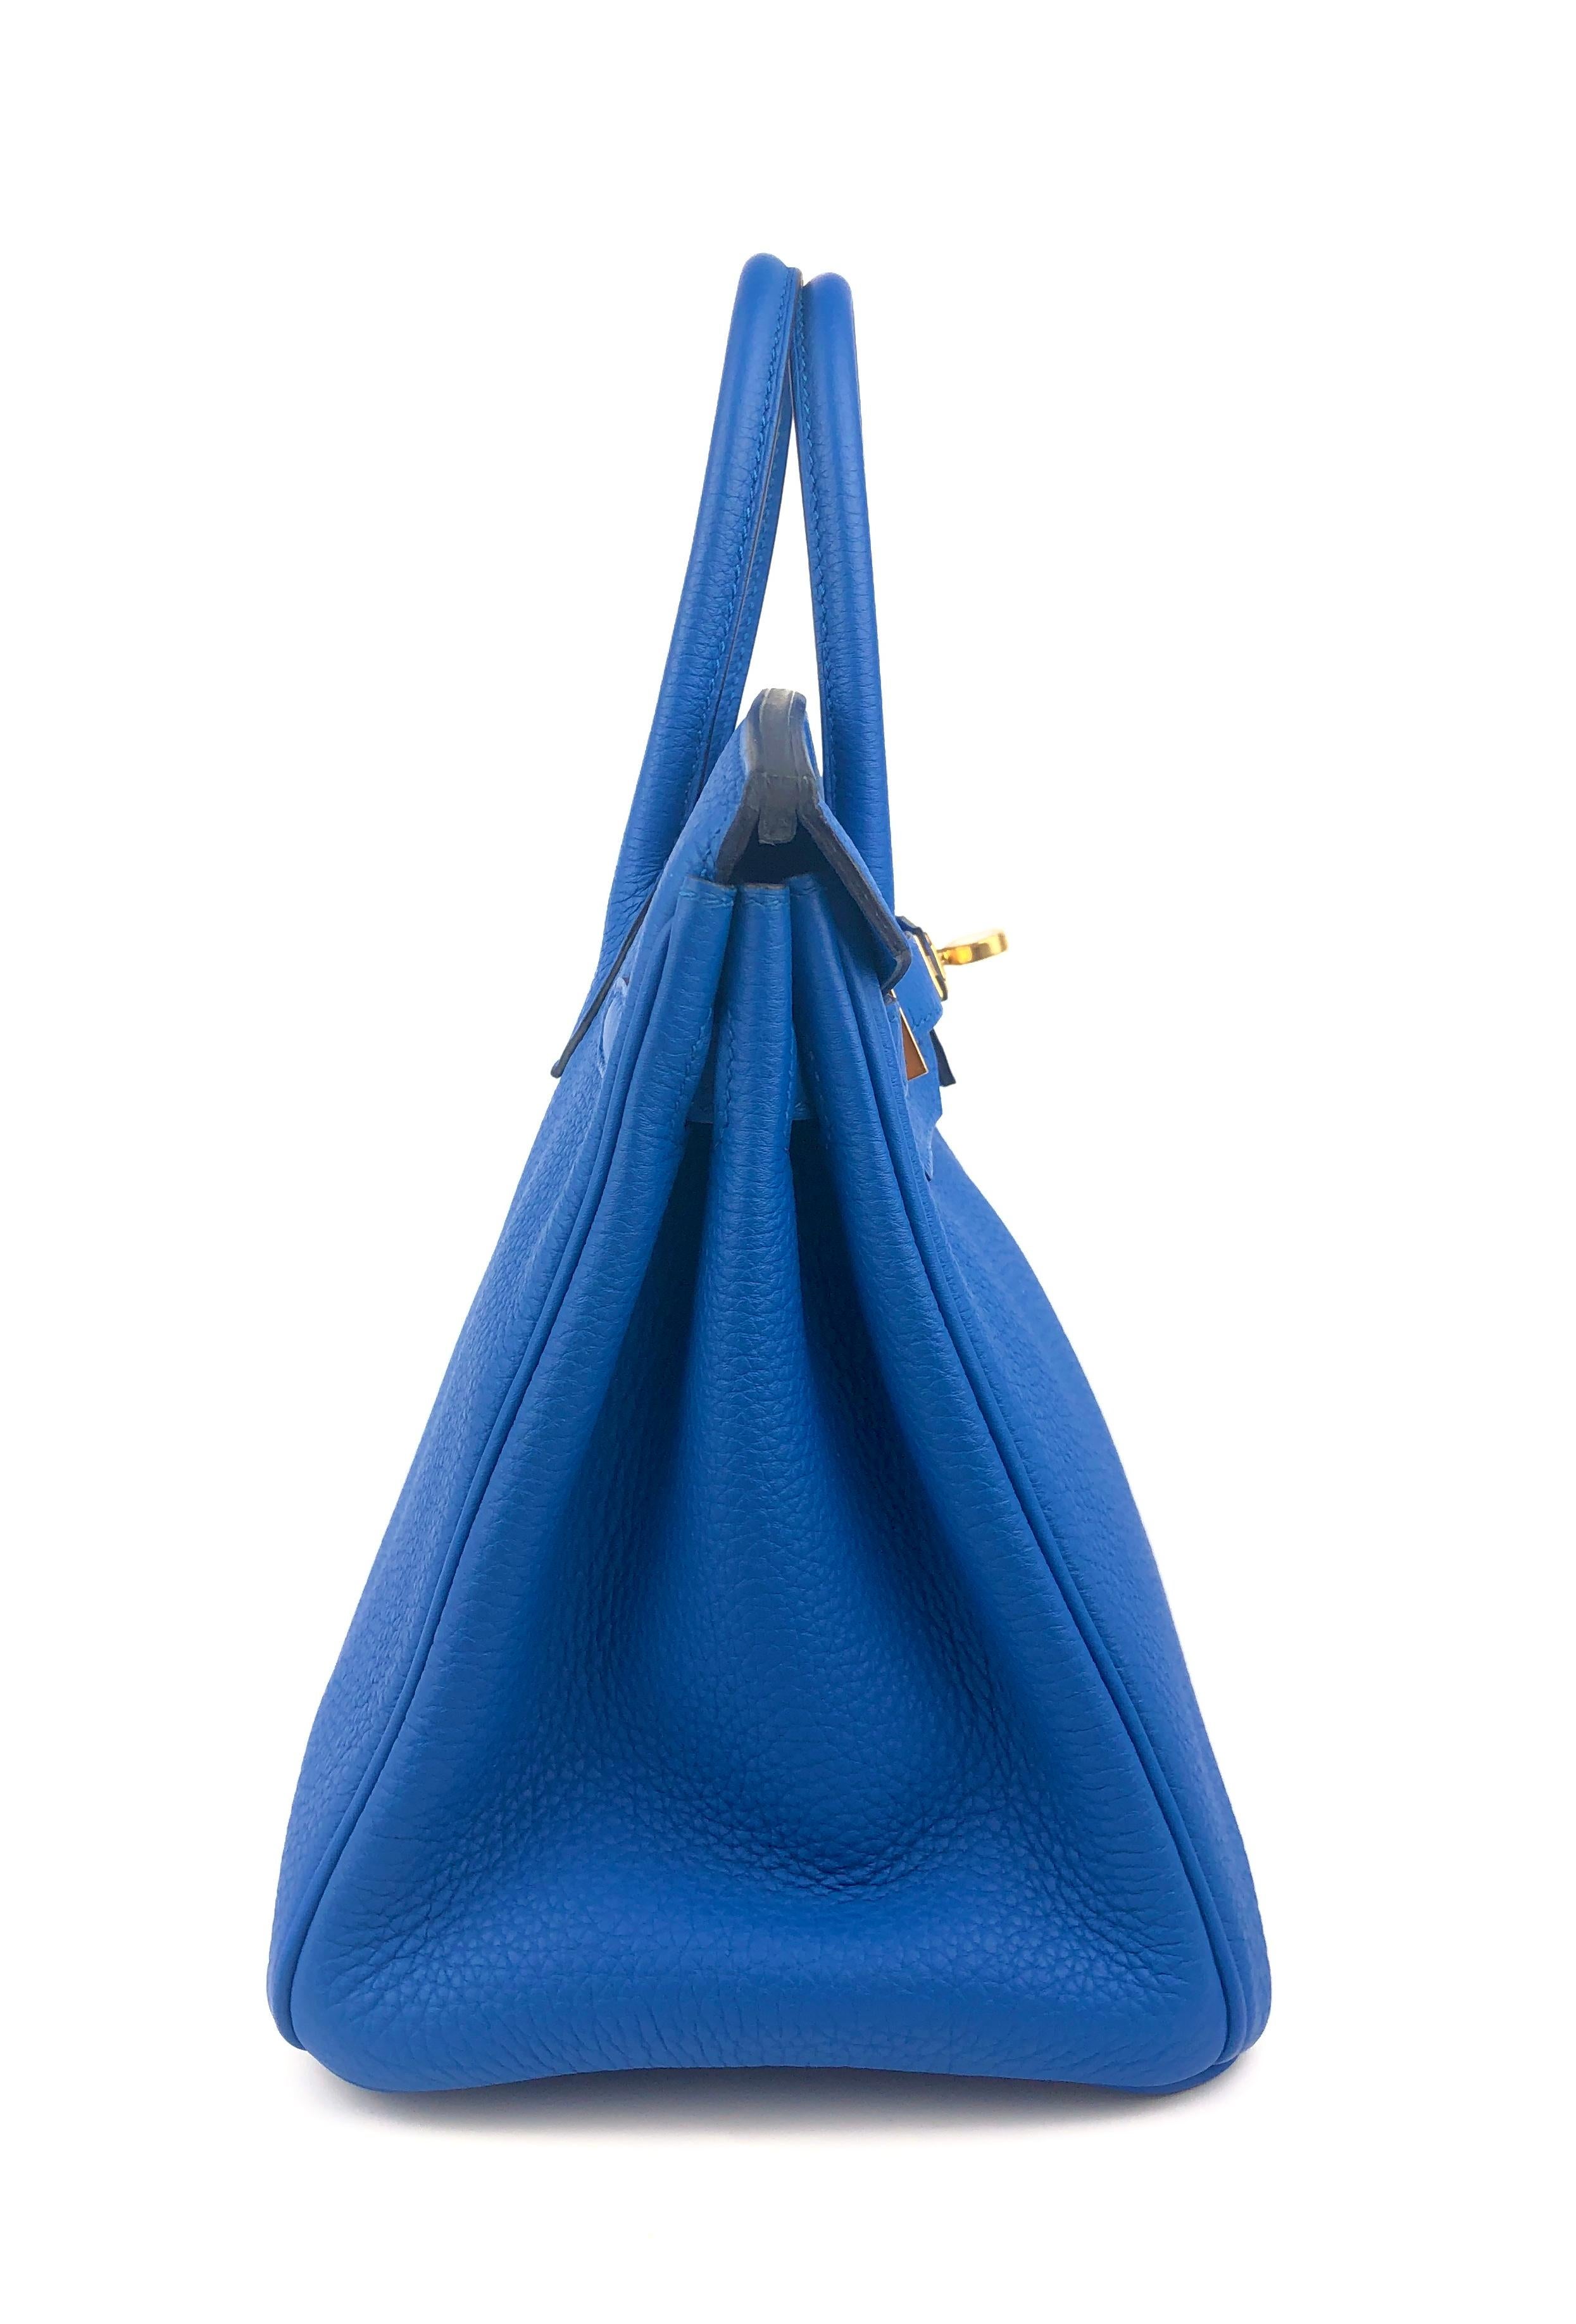 Hermes Birkin 25 Blue Zellige Togo Leather Handbag Bag Gold Hardware RARE 1